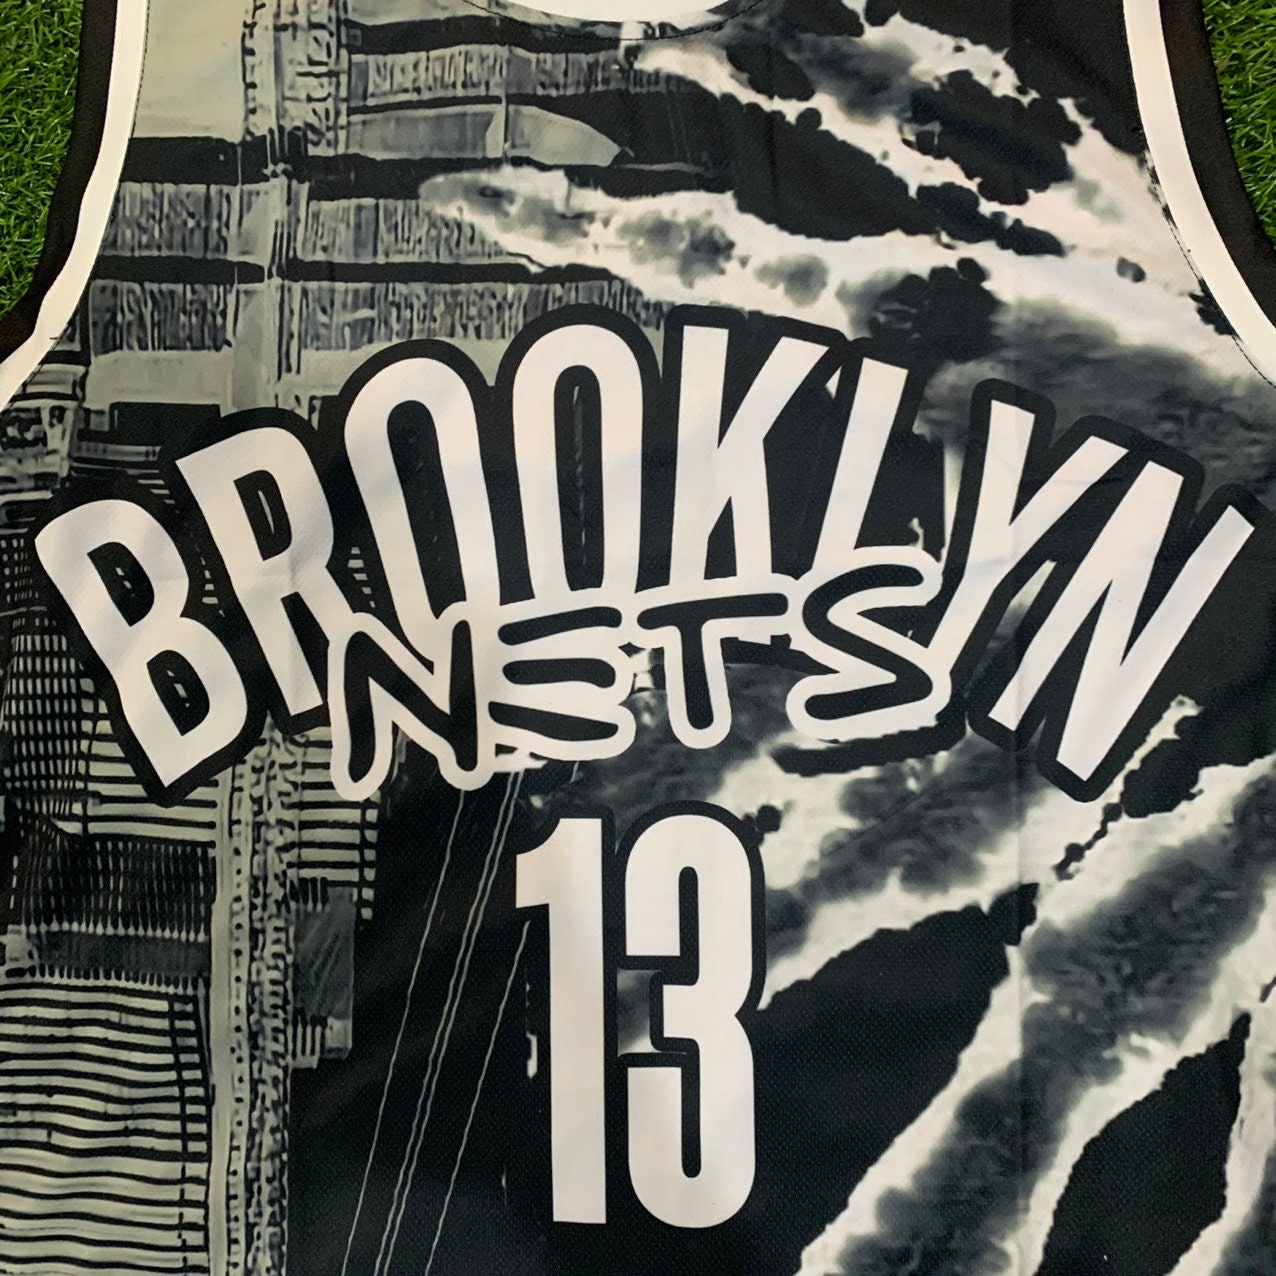 Basketball Jersey 13 Brooklyn Fan Design Basketball Jersey | Etsy